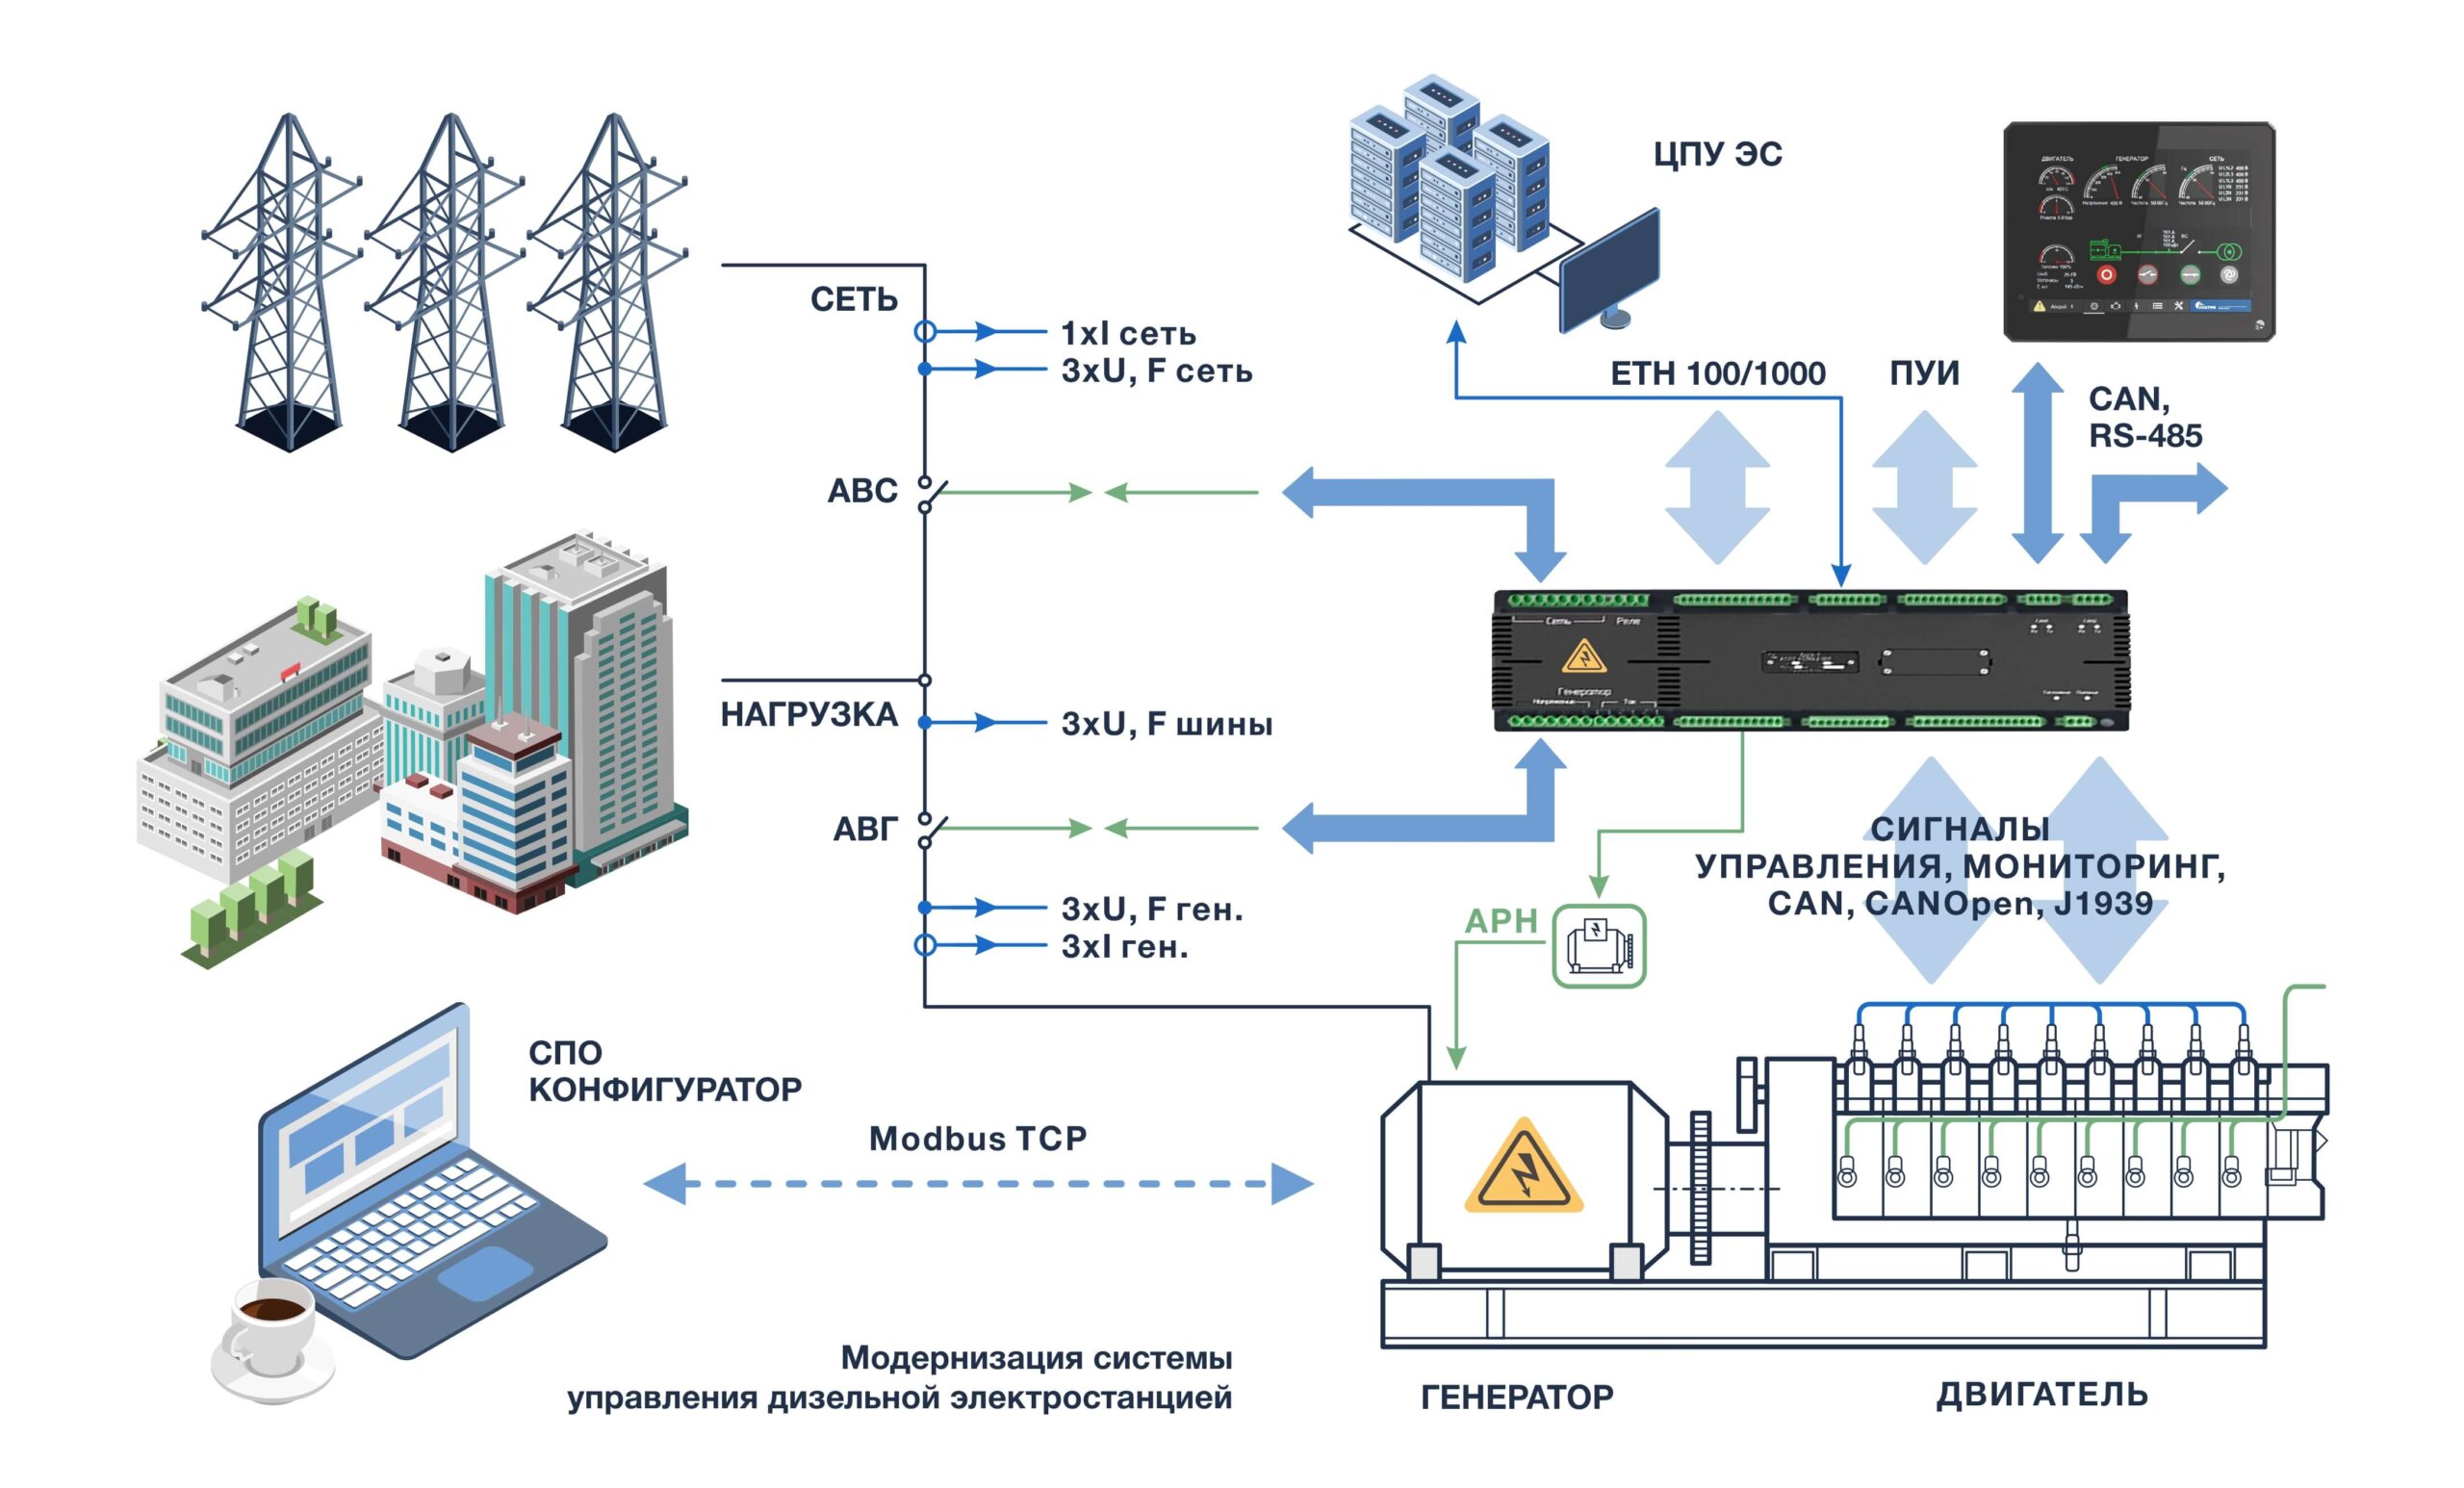 Модернизация системы управления дизельной электростанцией ДЭС